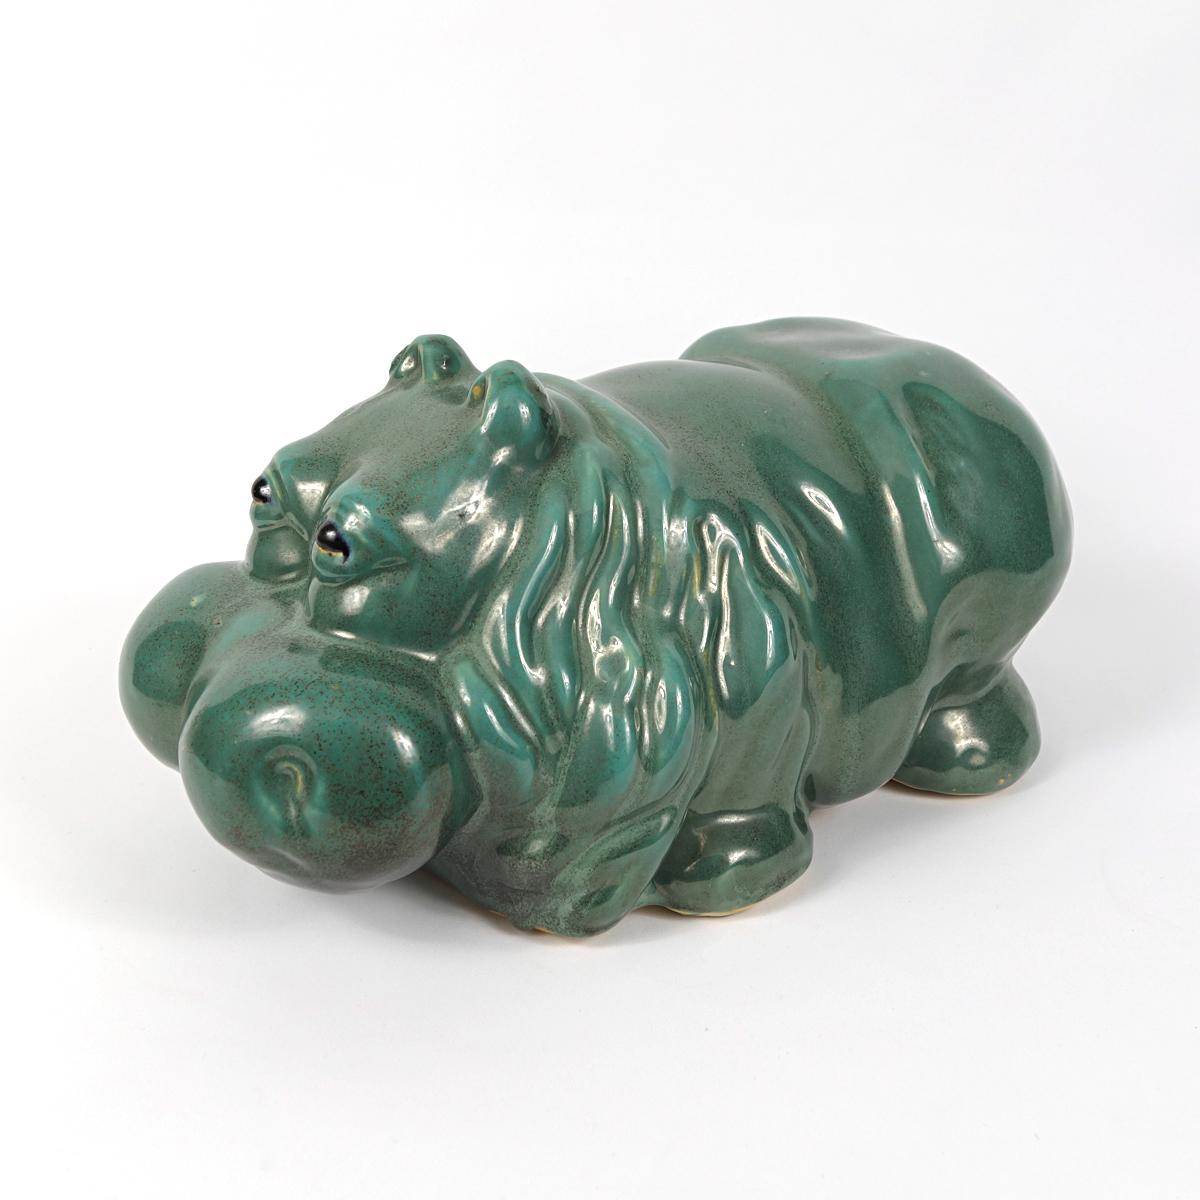 Big Green Cheerful Ceramic Statue of a Hippopotamus In Good Condition For Sale In Doornspijk, NL